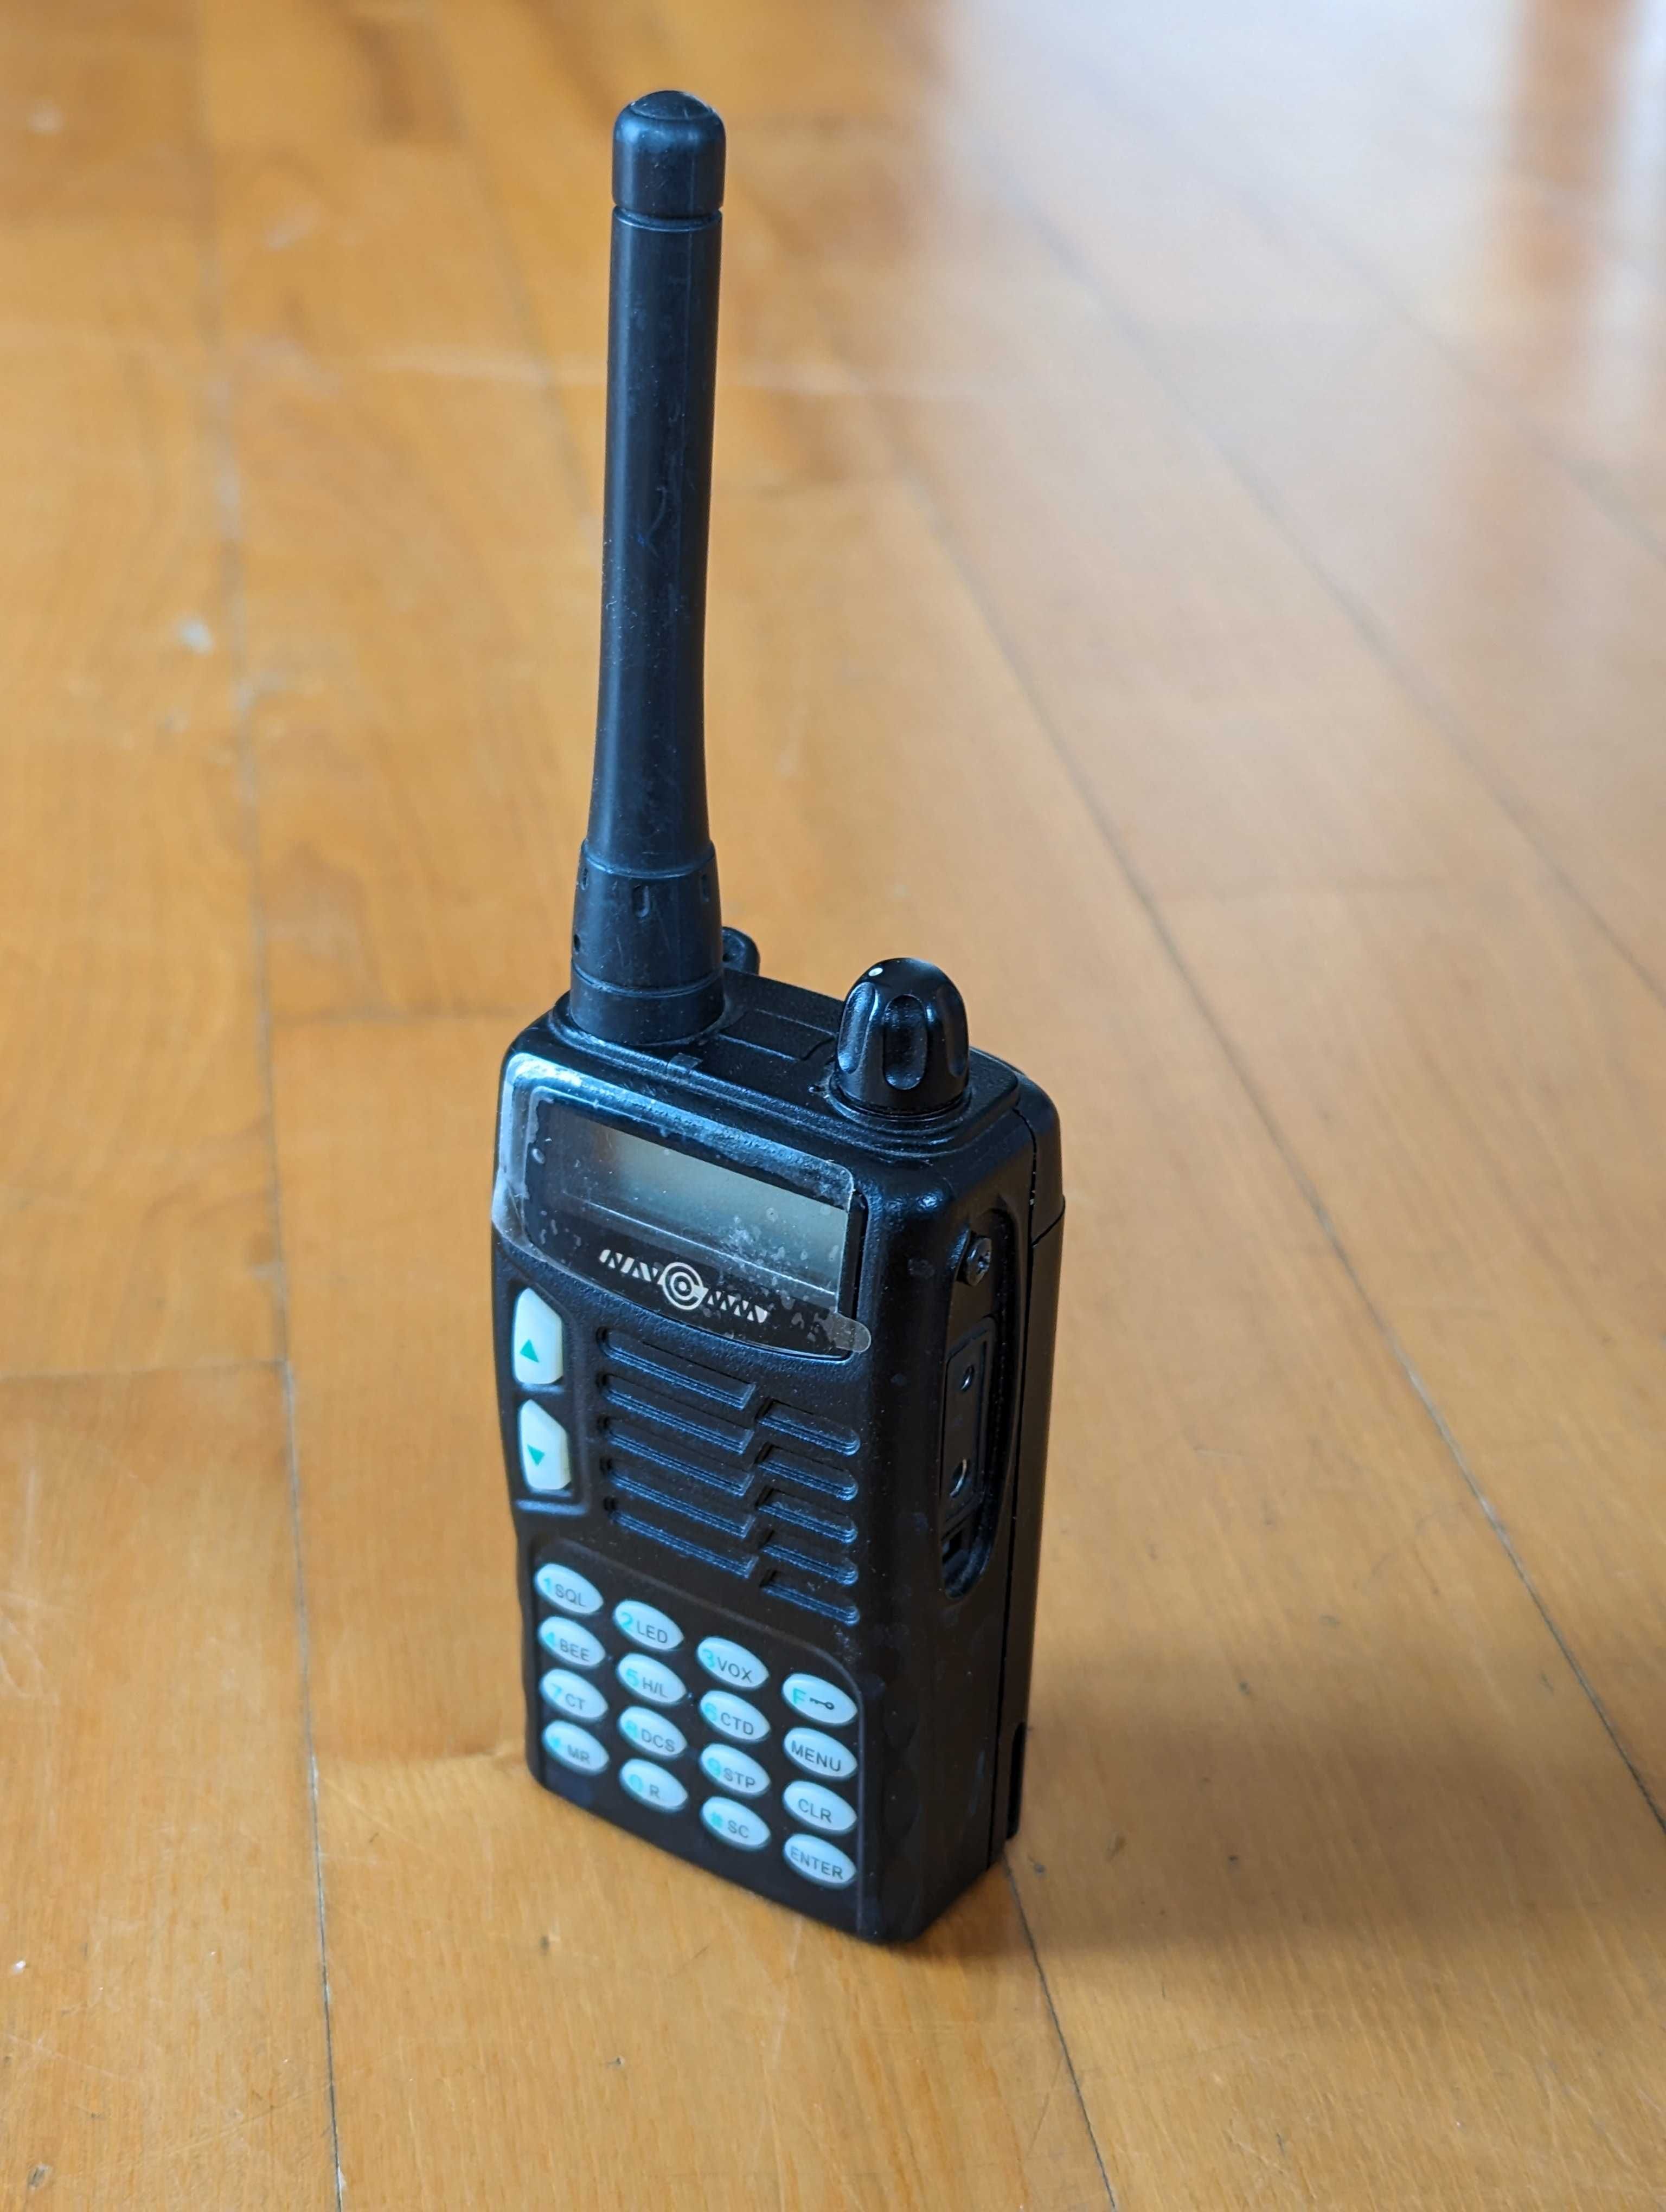 Krótkofalówka TK-750 radiotelefon VHF z klawiaturą numeryczną